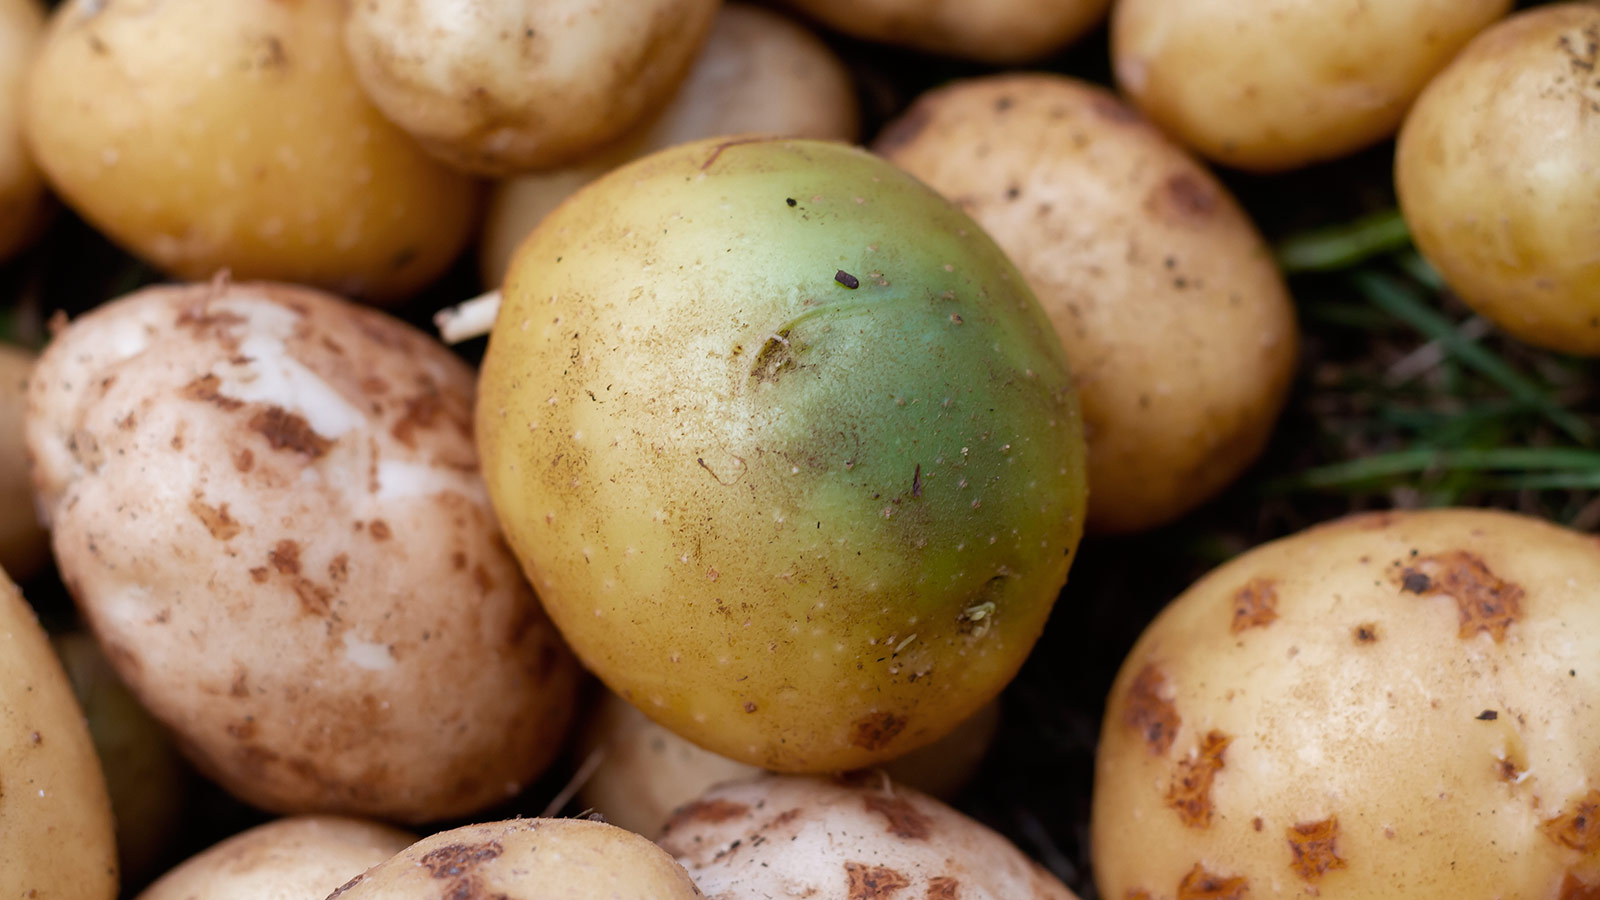 Poisonous potato update. Зеленая картошка. Соланин в картофеле. Картошка позеленела. Картофель с зелеными пятнами.